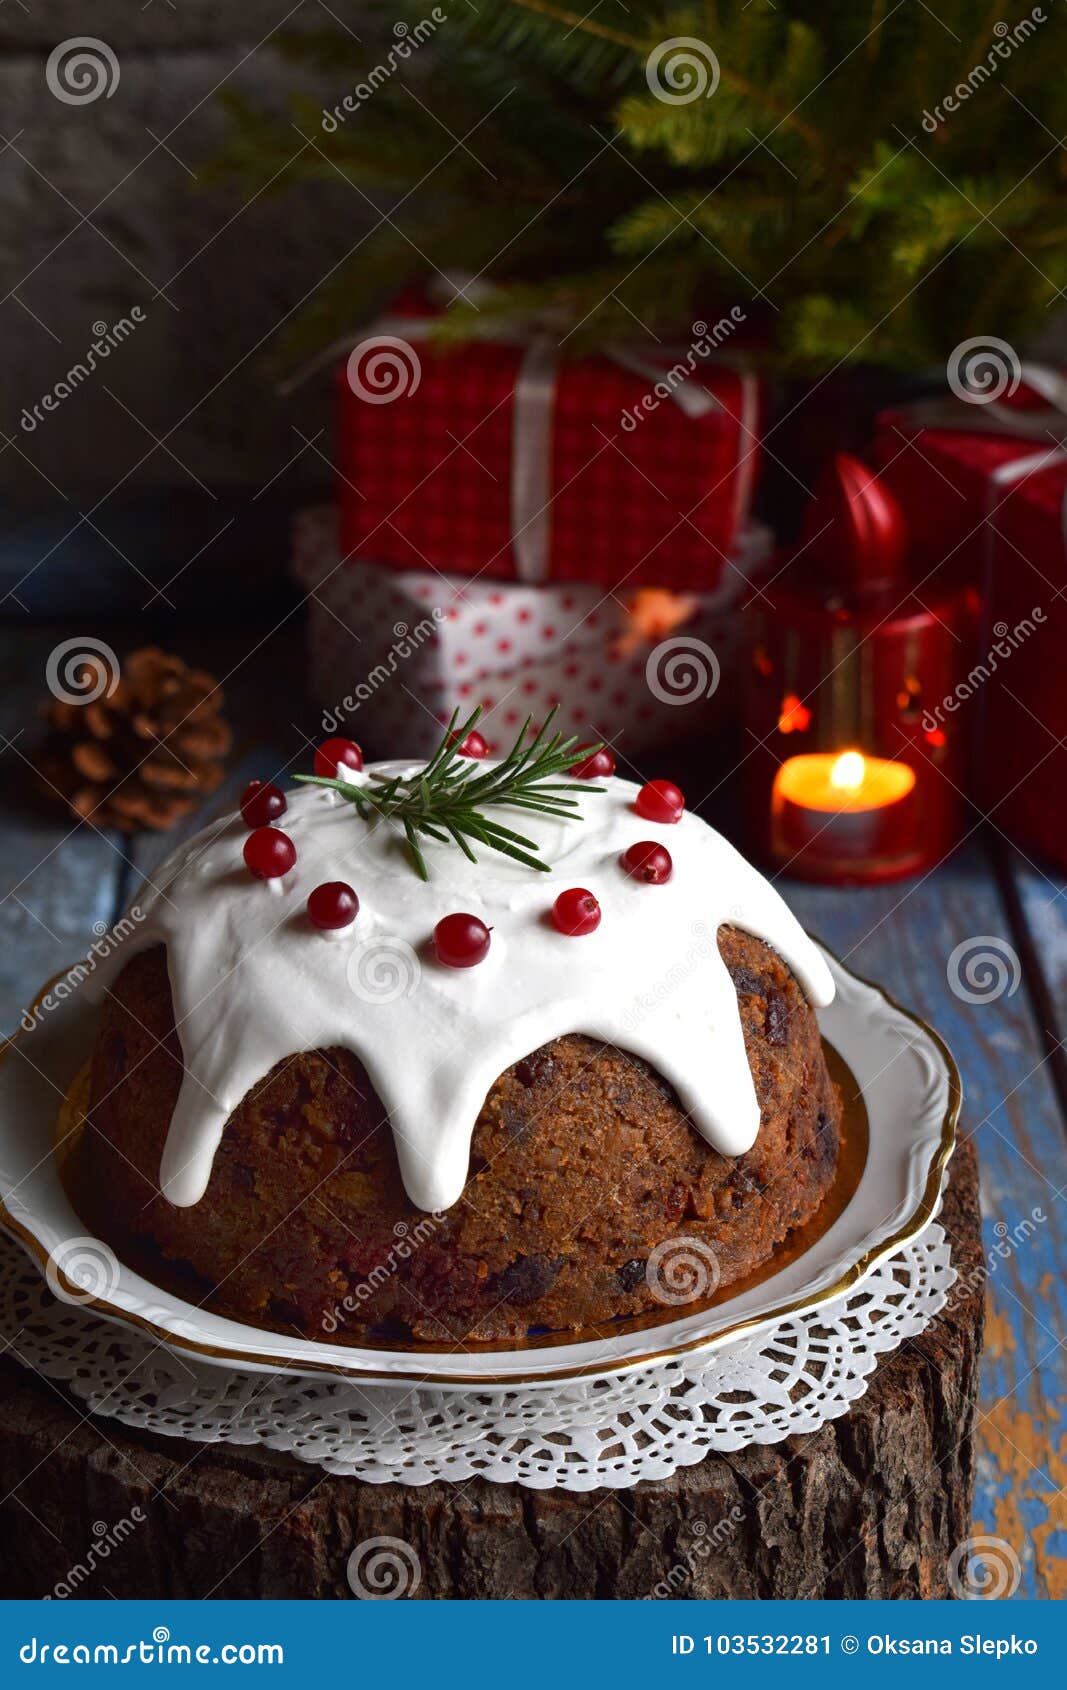 Christmas pudding traditionnel : Recette de Christmas pudding traditionnel